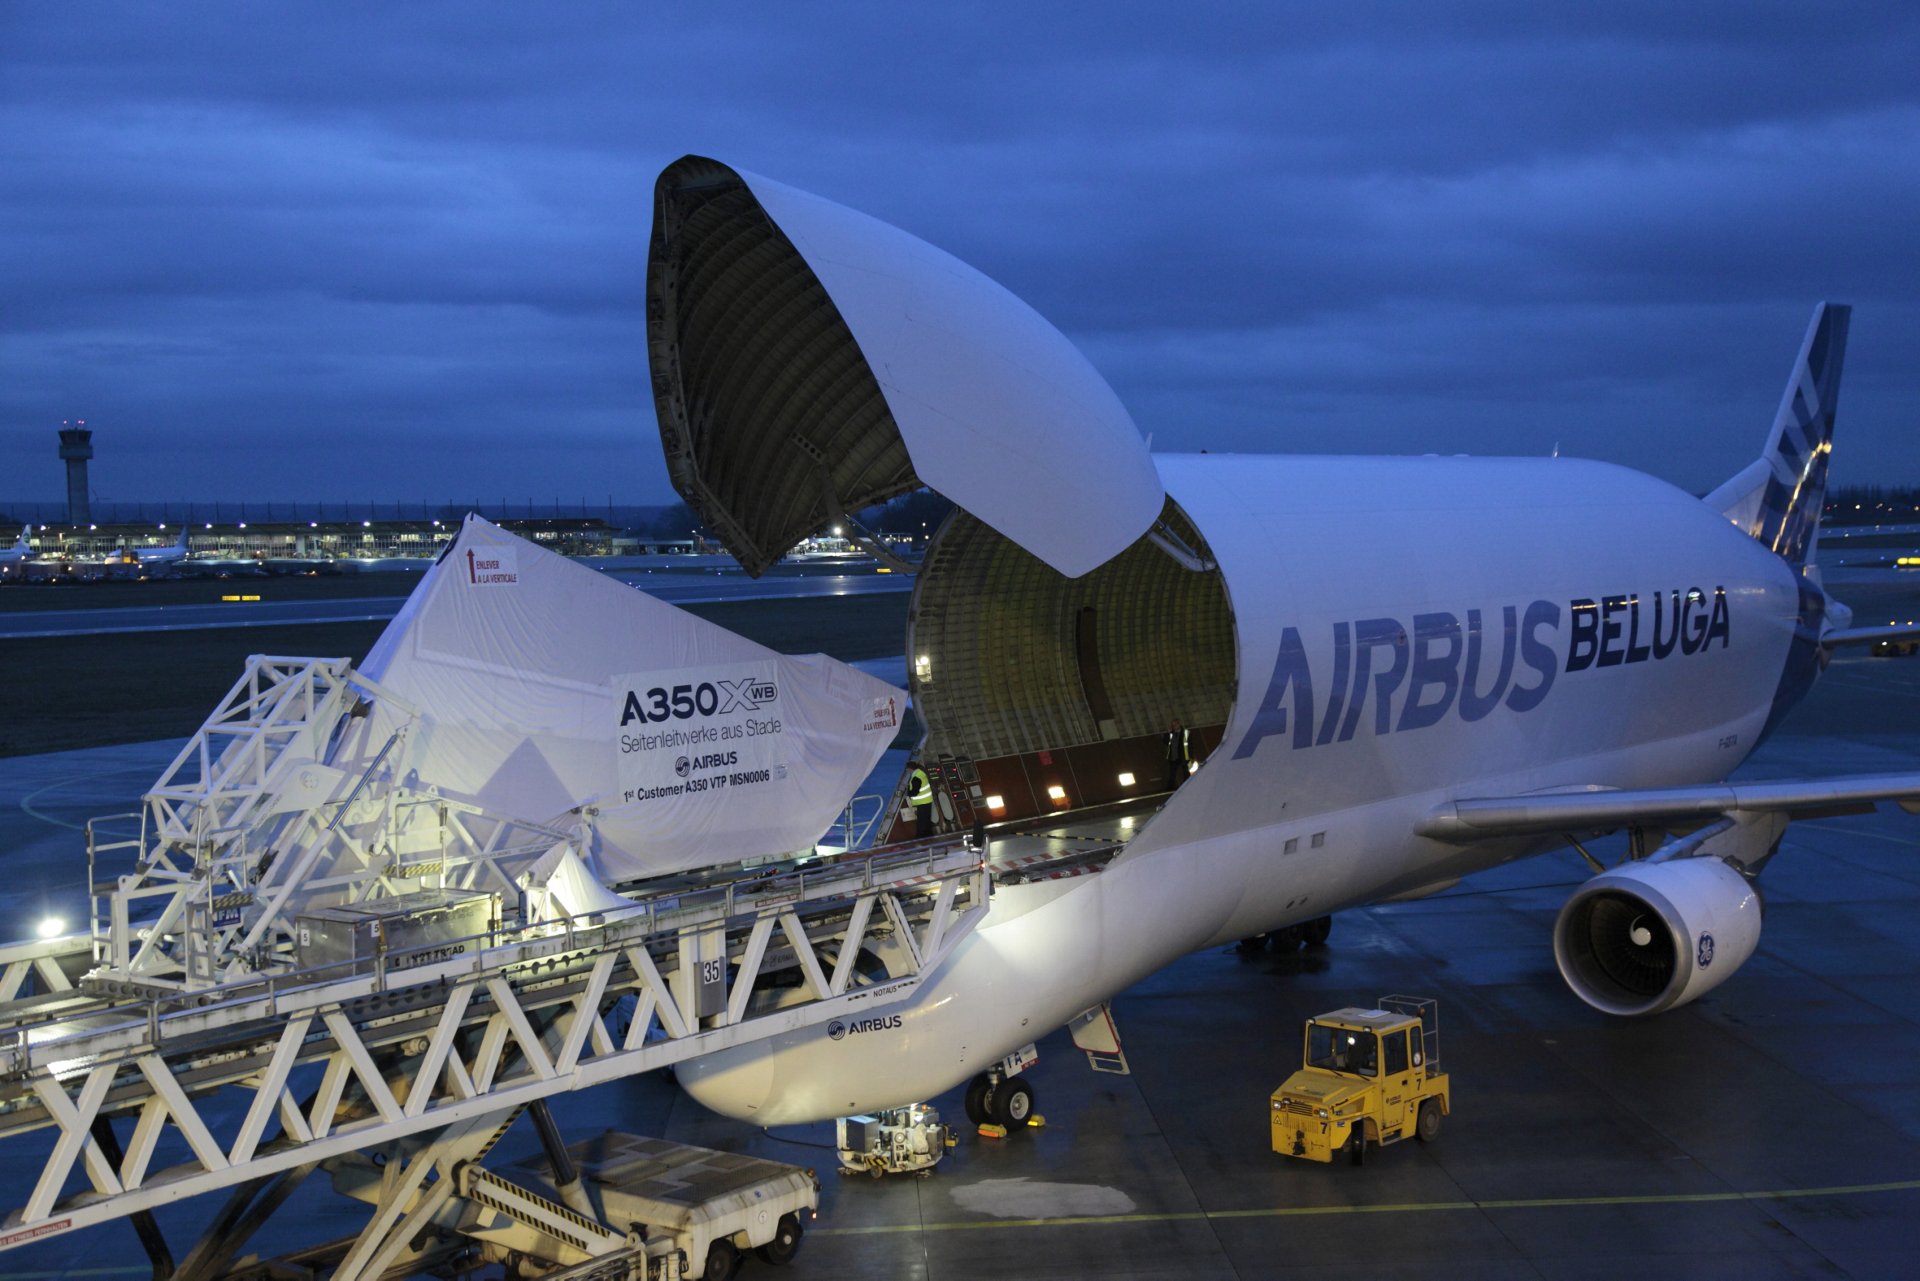 一架空乐动体育app靠谱吗客A300-600ST Beluga超大型运输机将卡塔尔航空公司第一架A350-900喷气式客机的垂直尾翼飞机从德国斯塔德运送到法国图卢兹的A350 XWB总装线